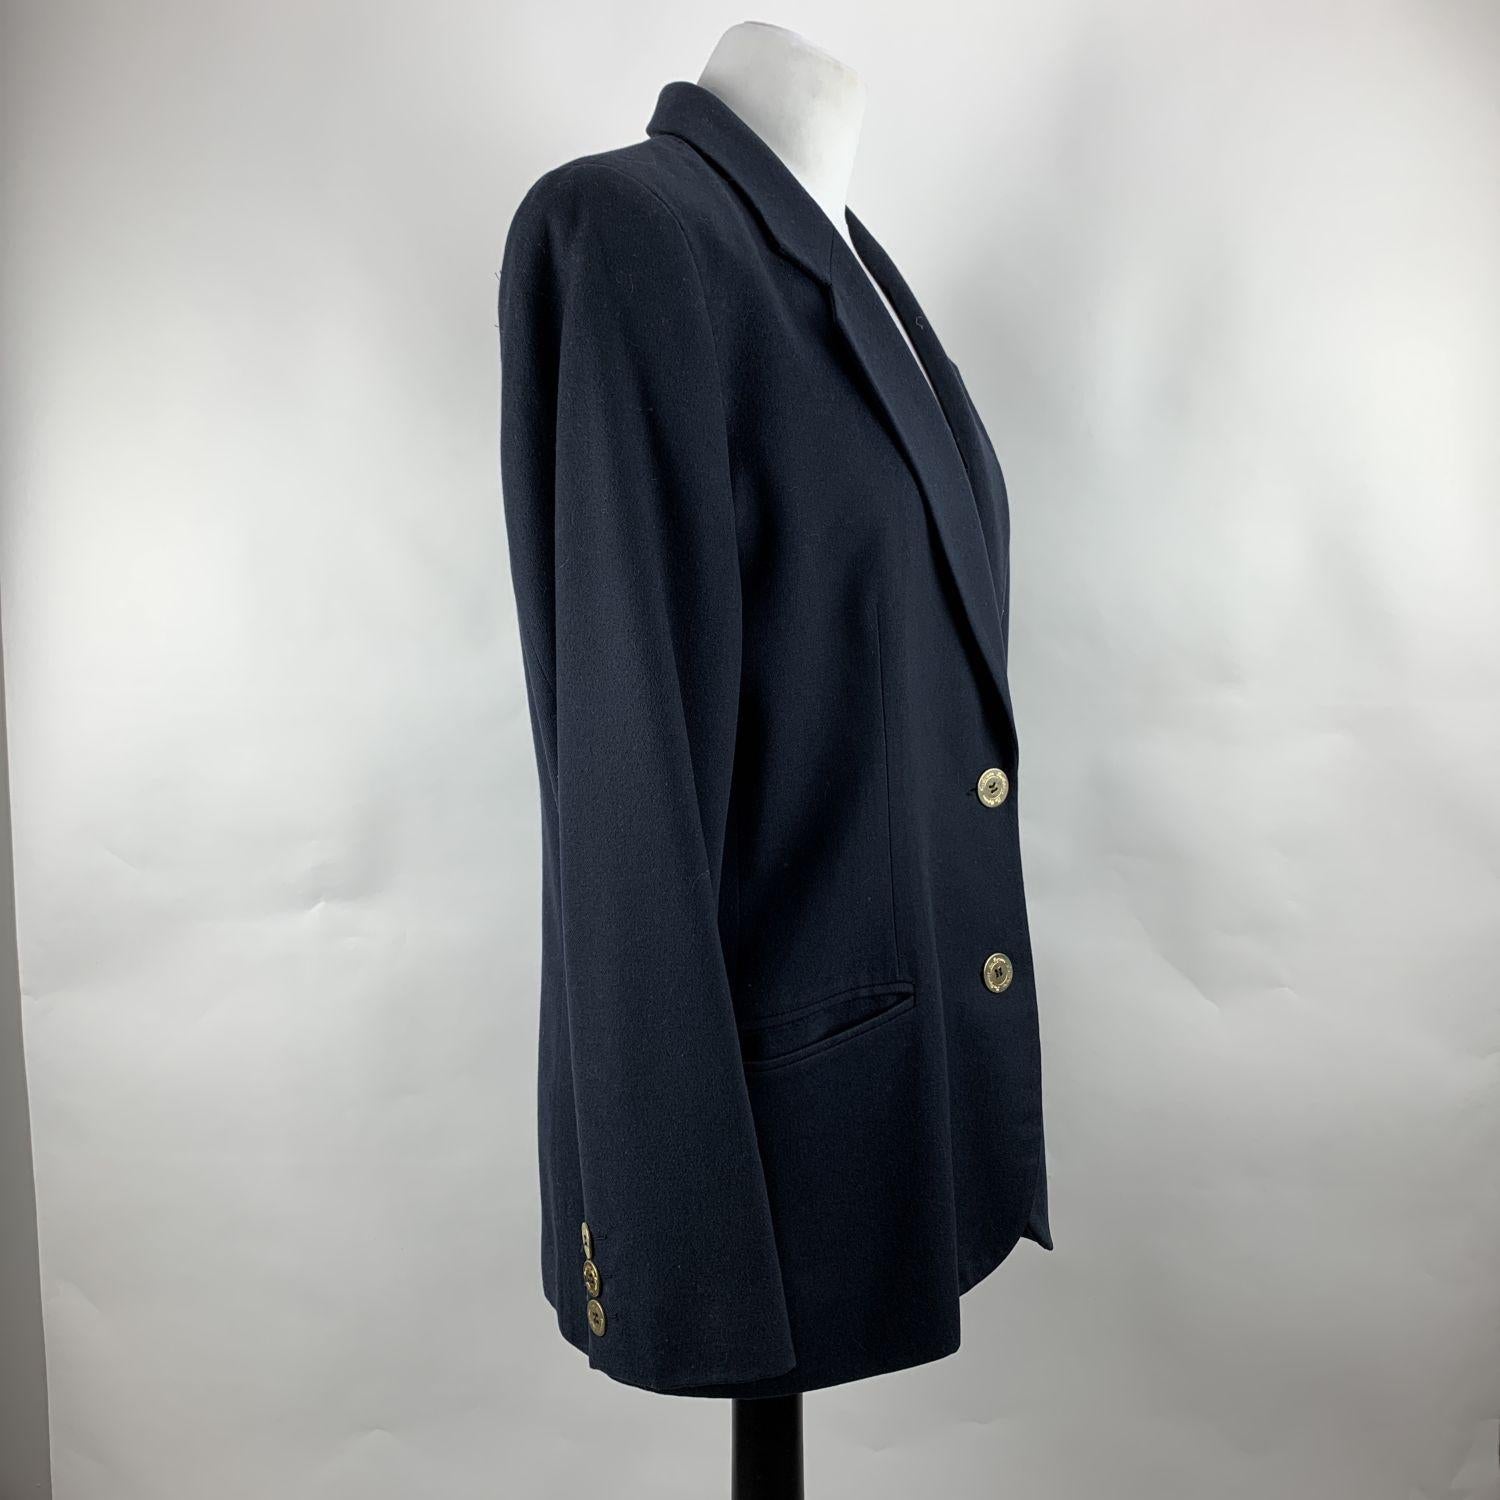 Women's Les Copains Vintage Navy Blue Cupro Blazer Jacket Size 42 IT